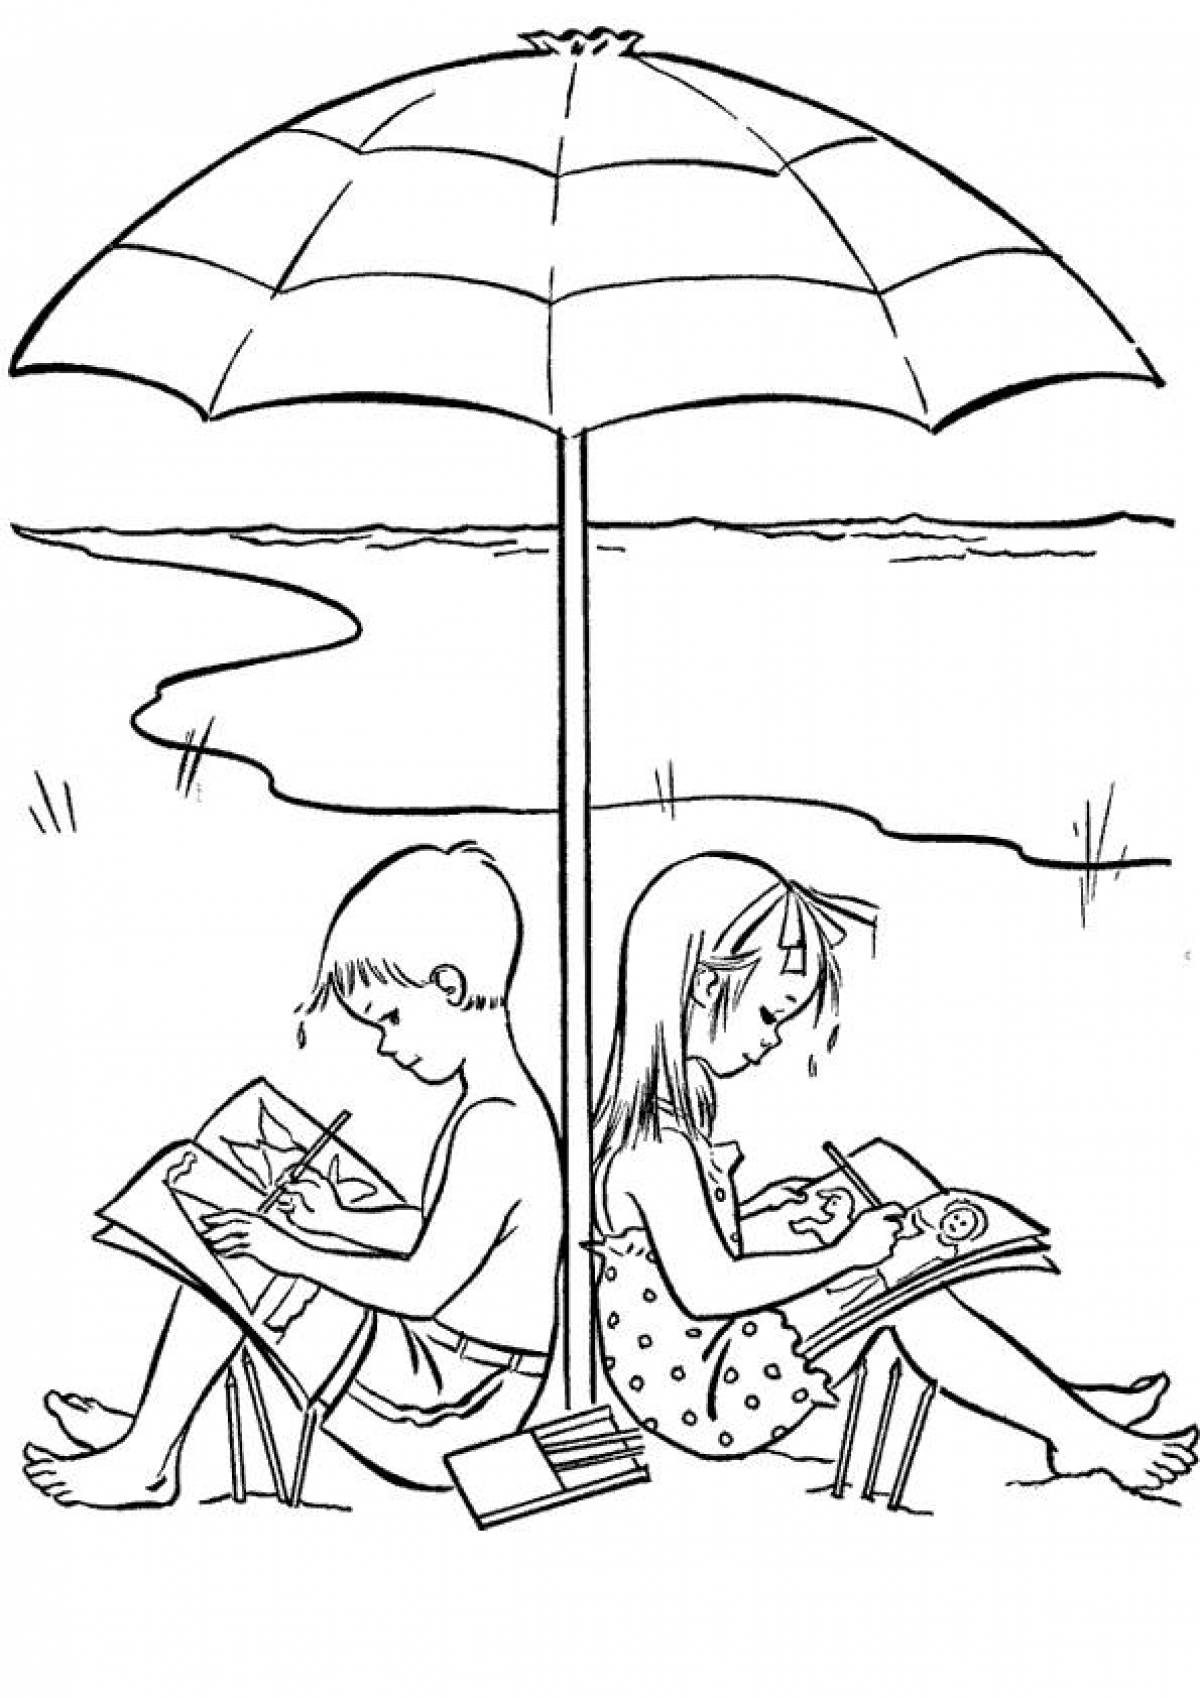 Children under an umbrella